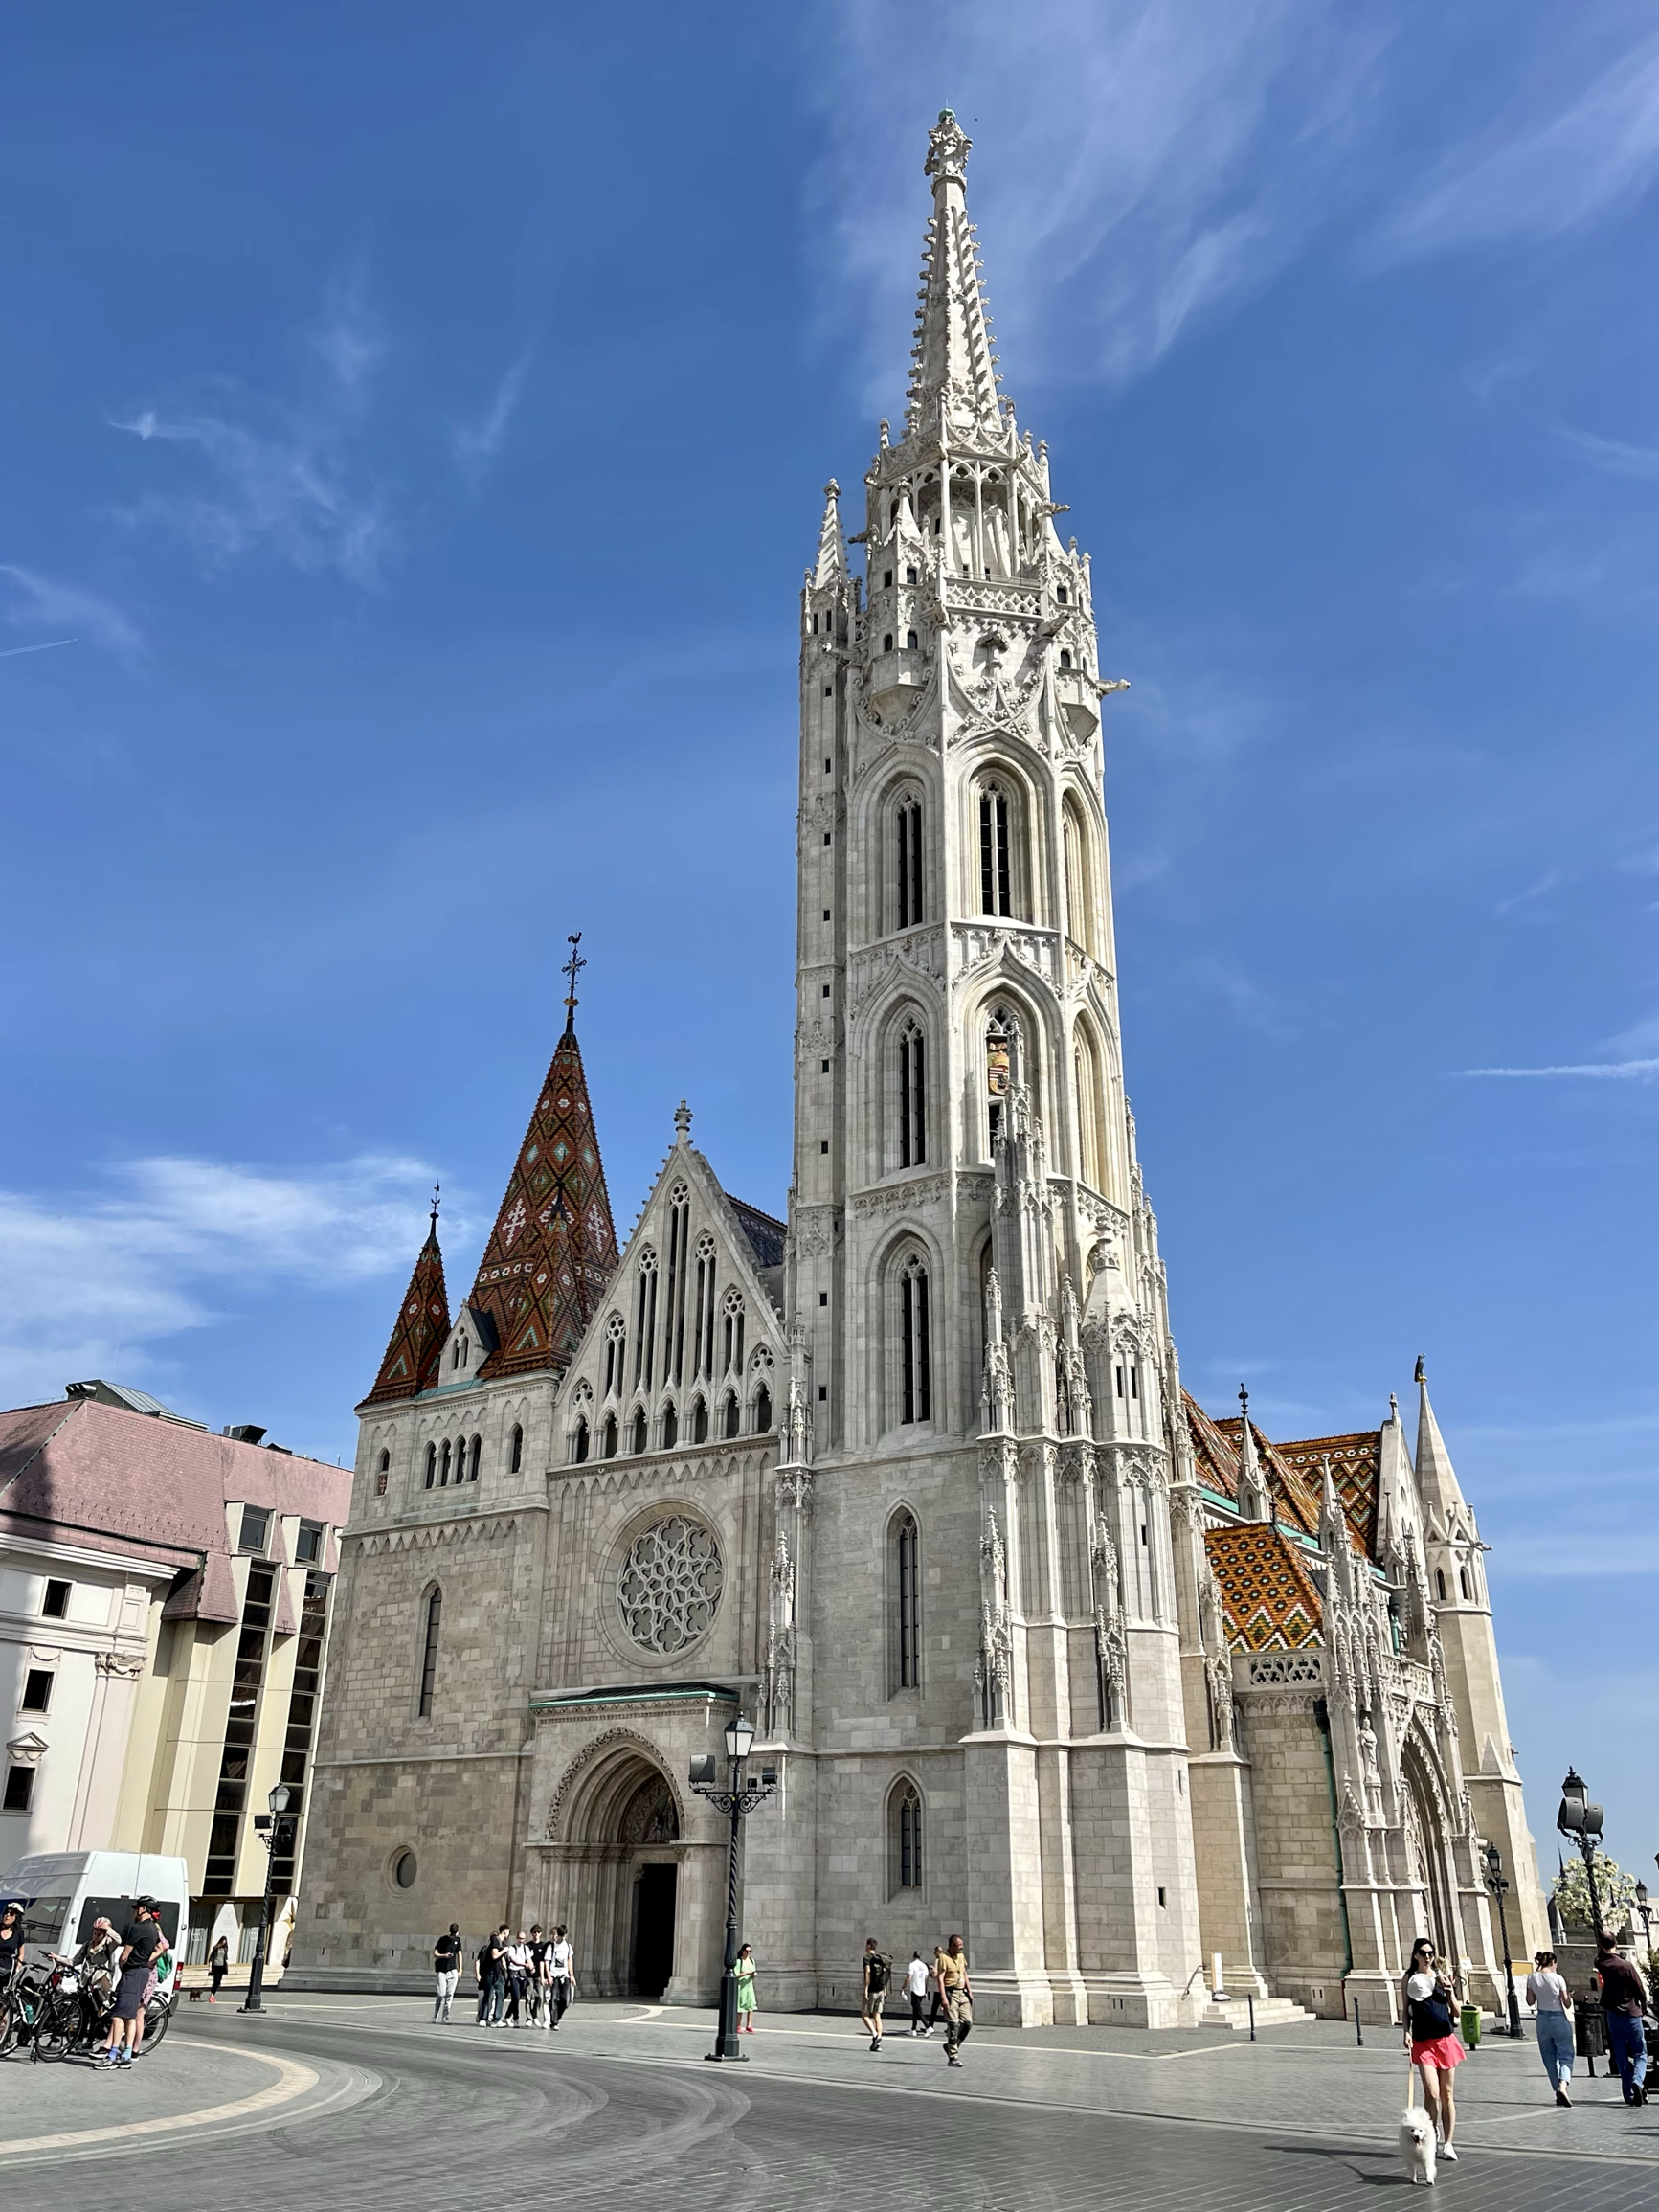 布达佩斯是匈牙利首都,一座古老而美丽的城市，被人们誉为“多瑙河明珠”，也是世界文化遗产之城。布达佩斯